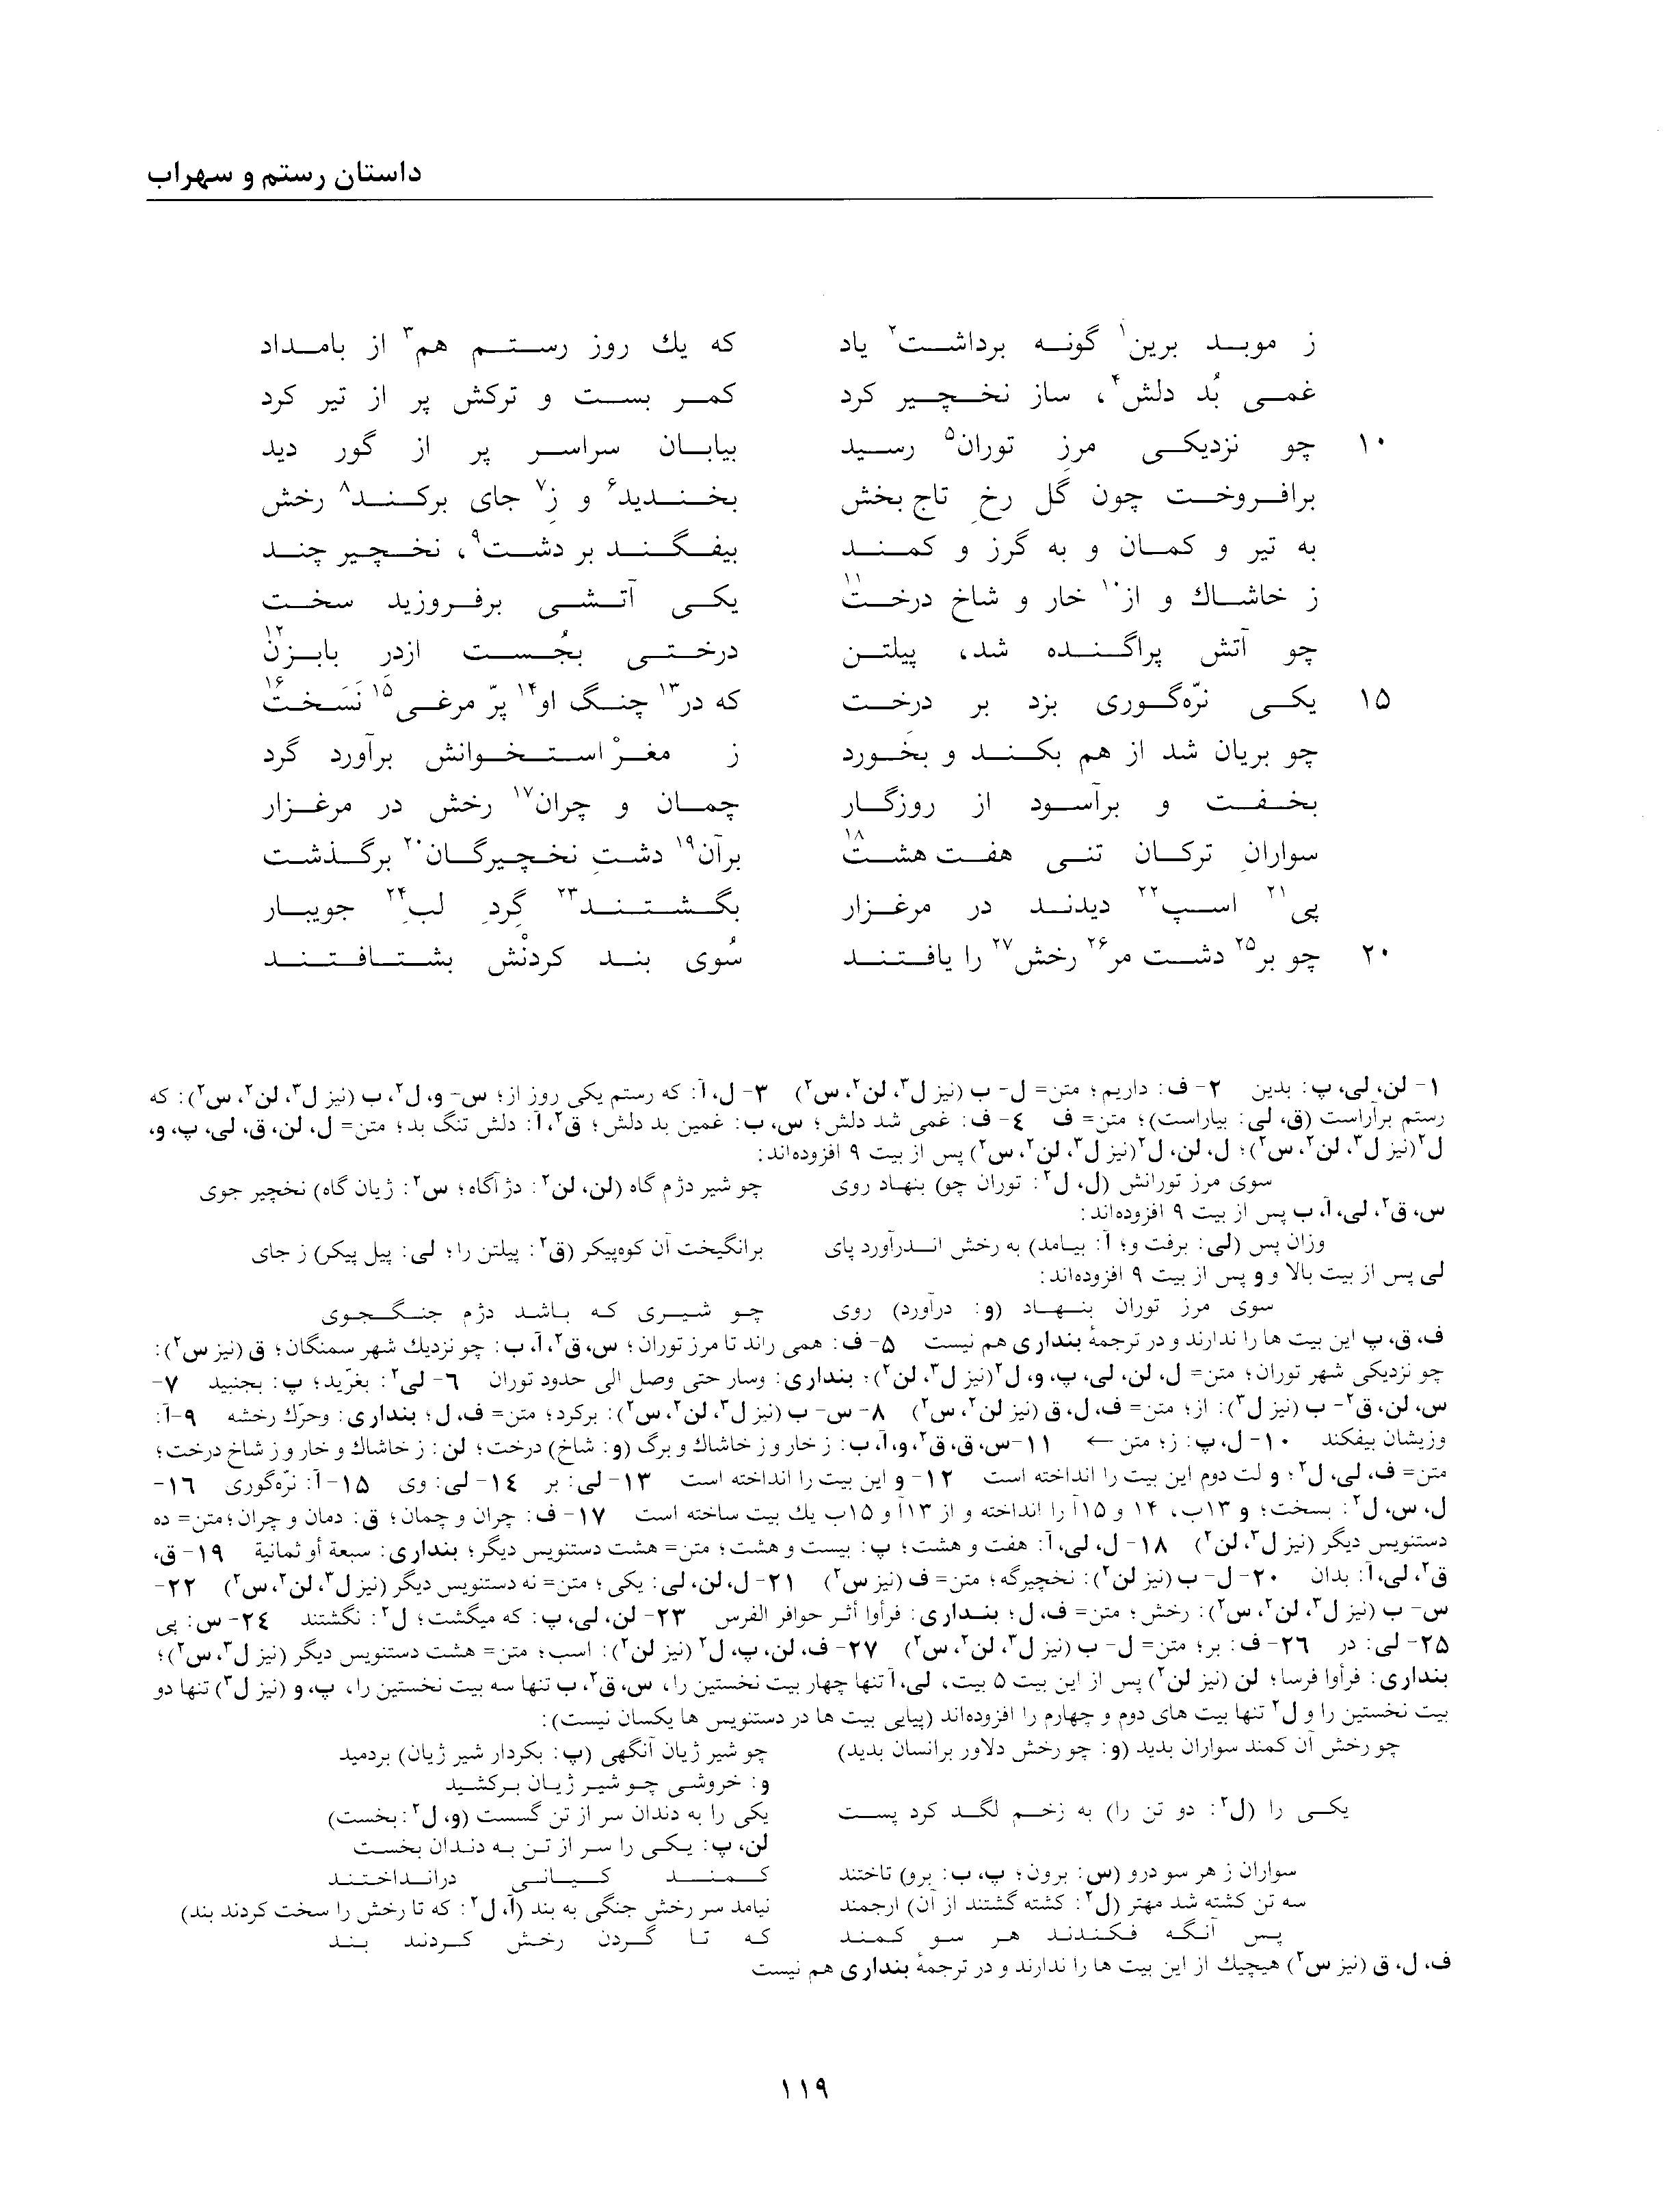 vol. 2, p. 119